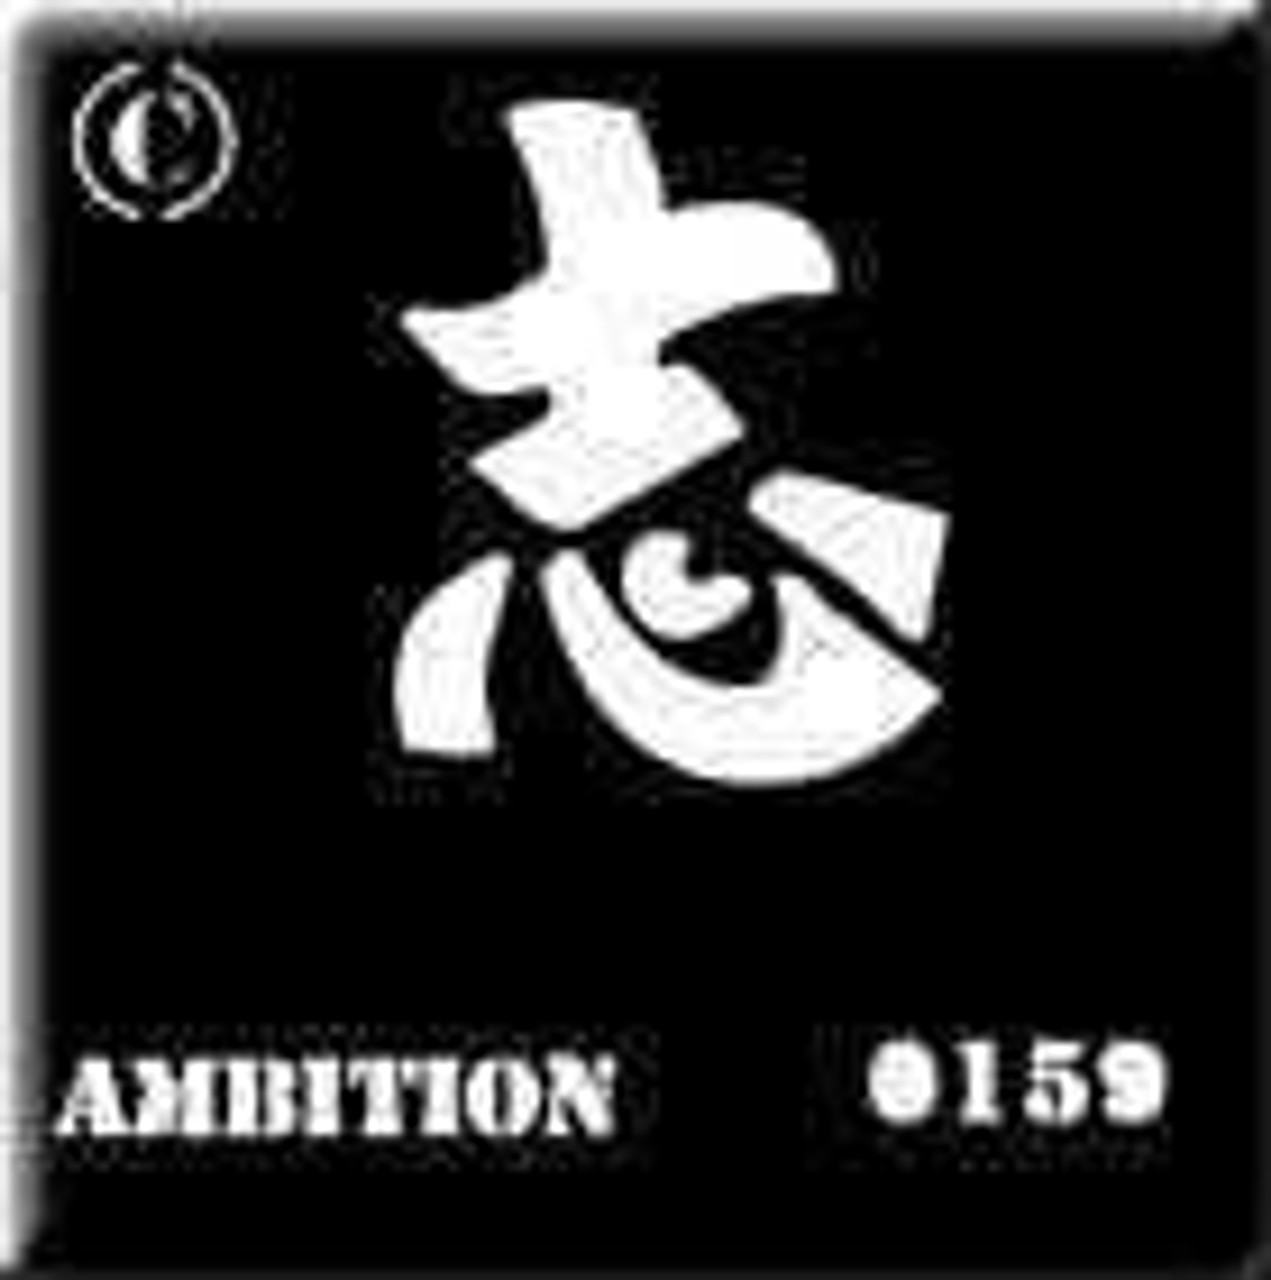 0159 Ambition